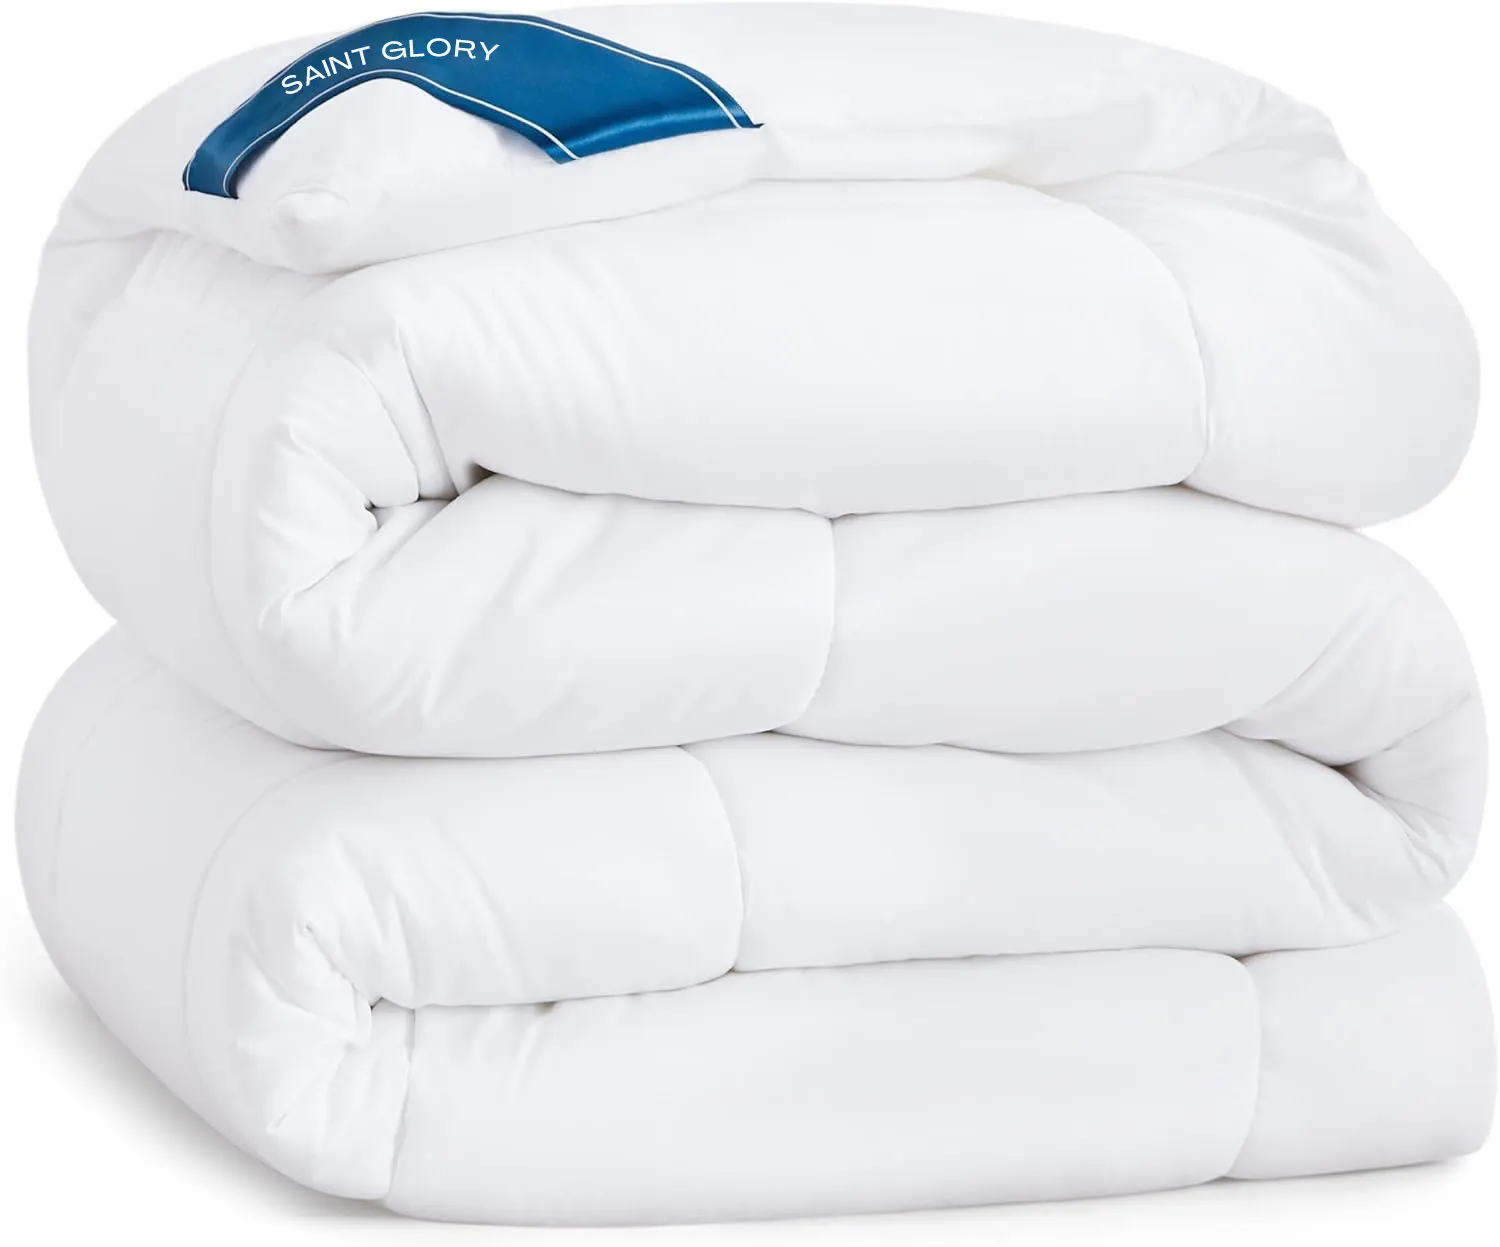 Down selimut ukuran kustom warna putih, selimut quilt semua musim Queen dengan tab sudut sisipan selimut ukuran Queen